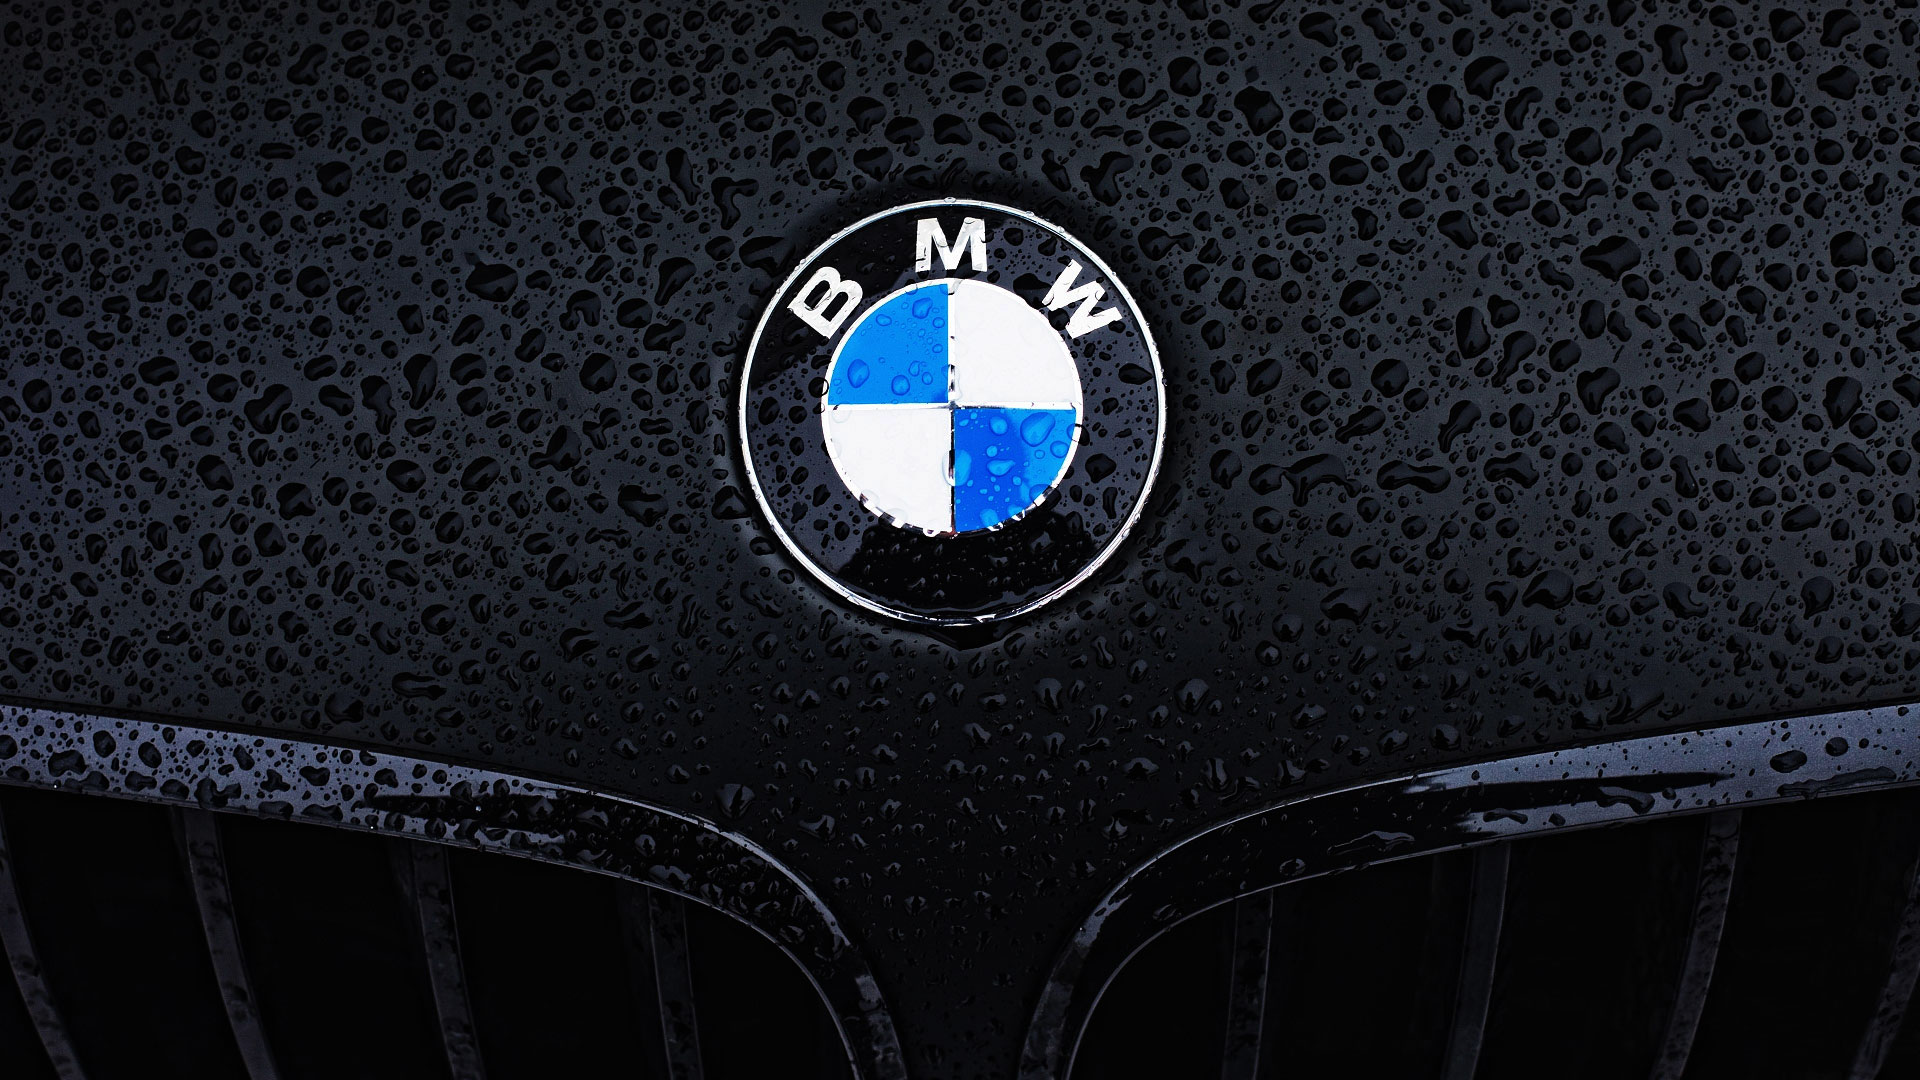 bmw-logo-water-drops-hd-1080P-wallpaper - Autocar VietNam